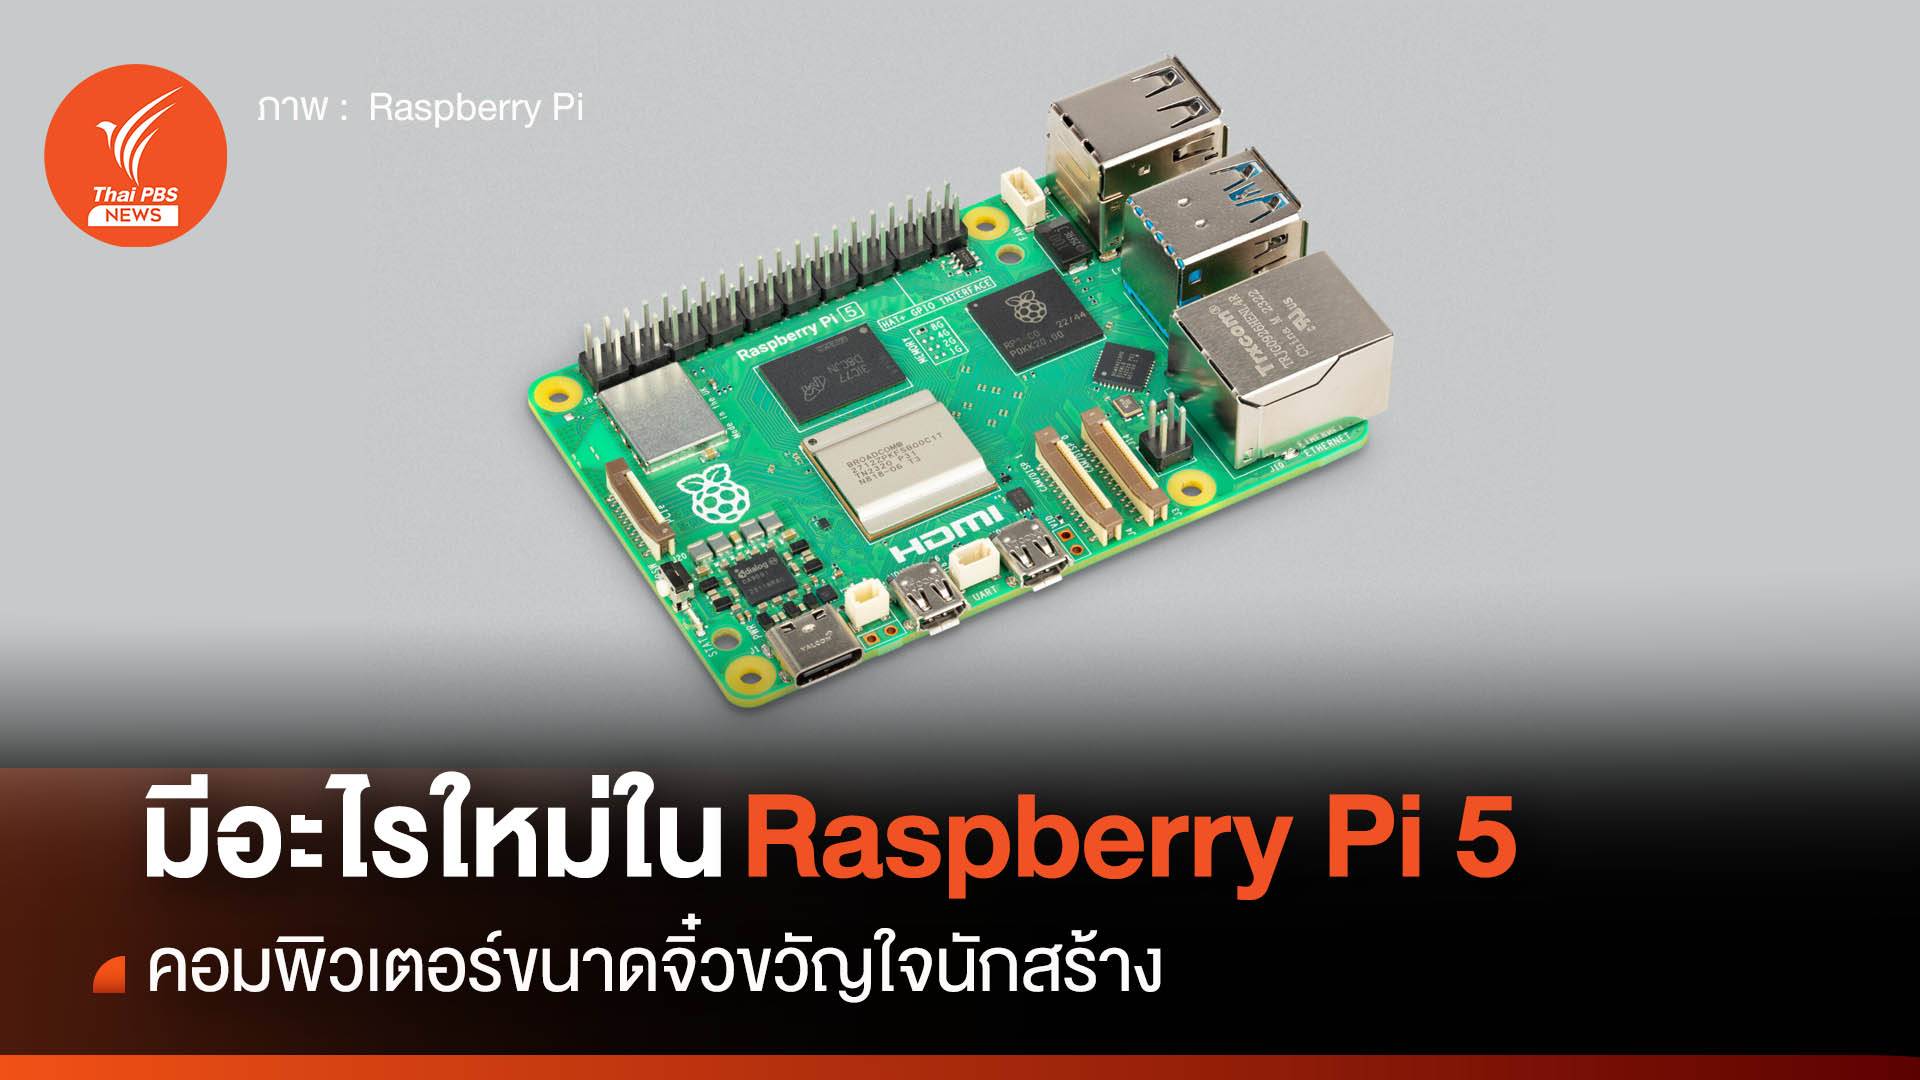 มีอะไรใหม่ใน “Raspberry Pi 5”